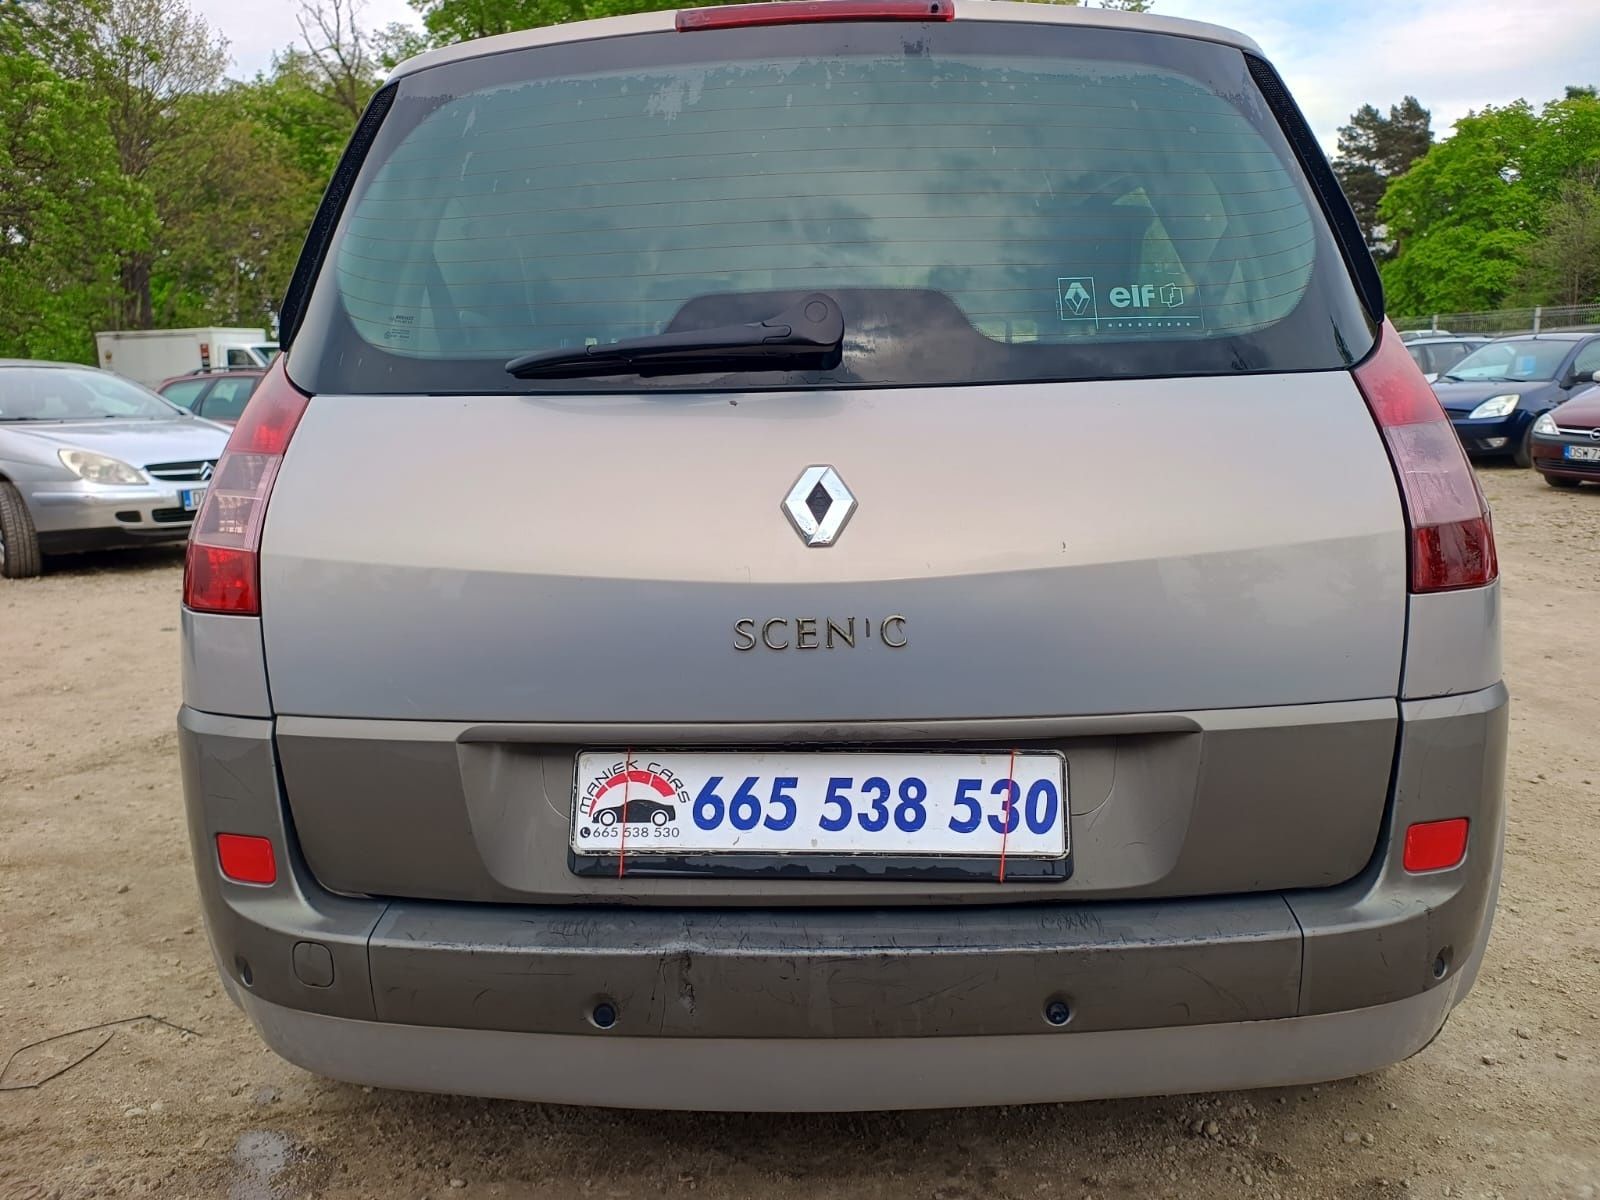 Renault Scenic 1.9DCI 2004r // Okazja // Opłaty // Zamiana